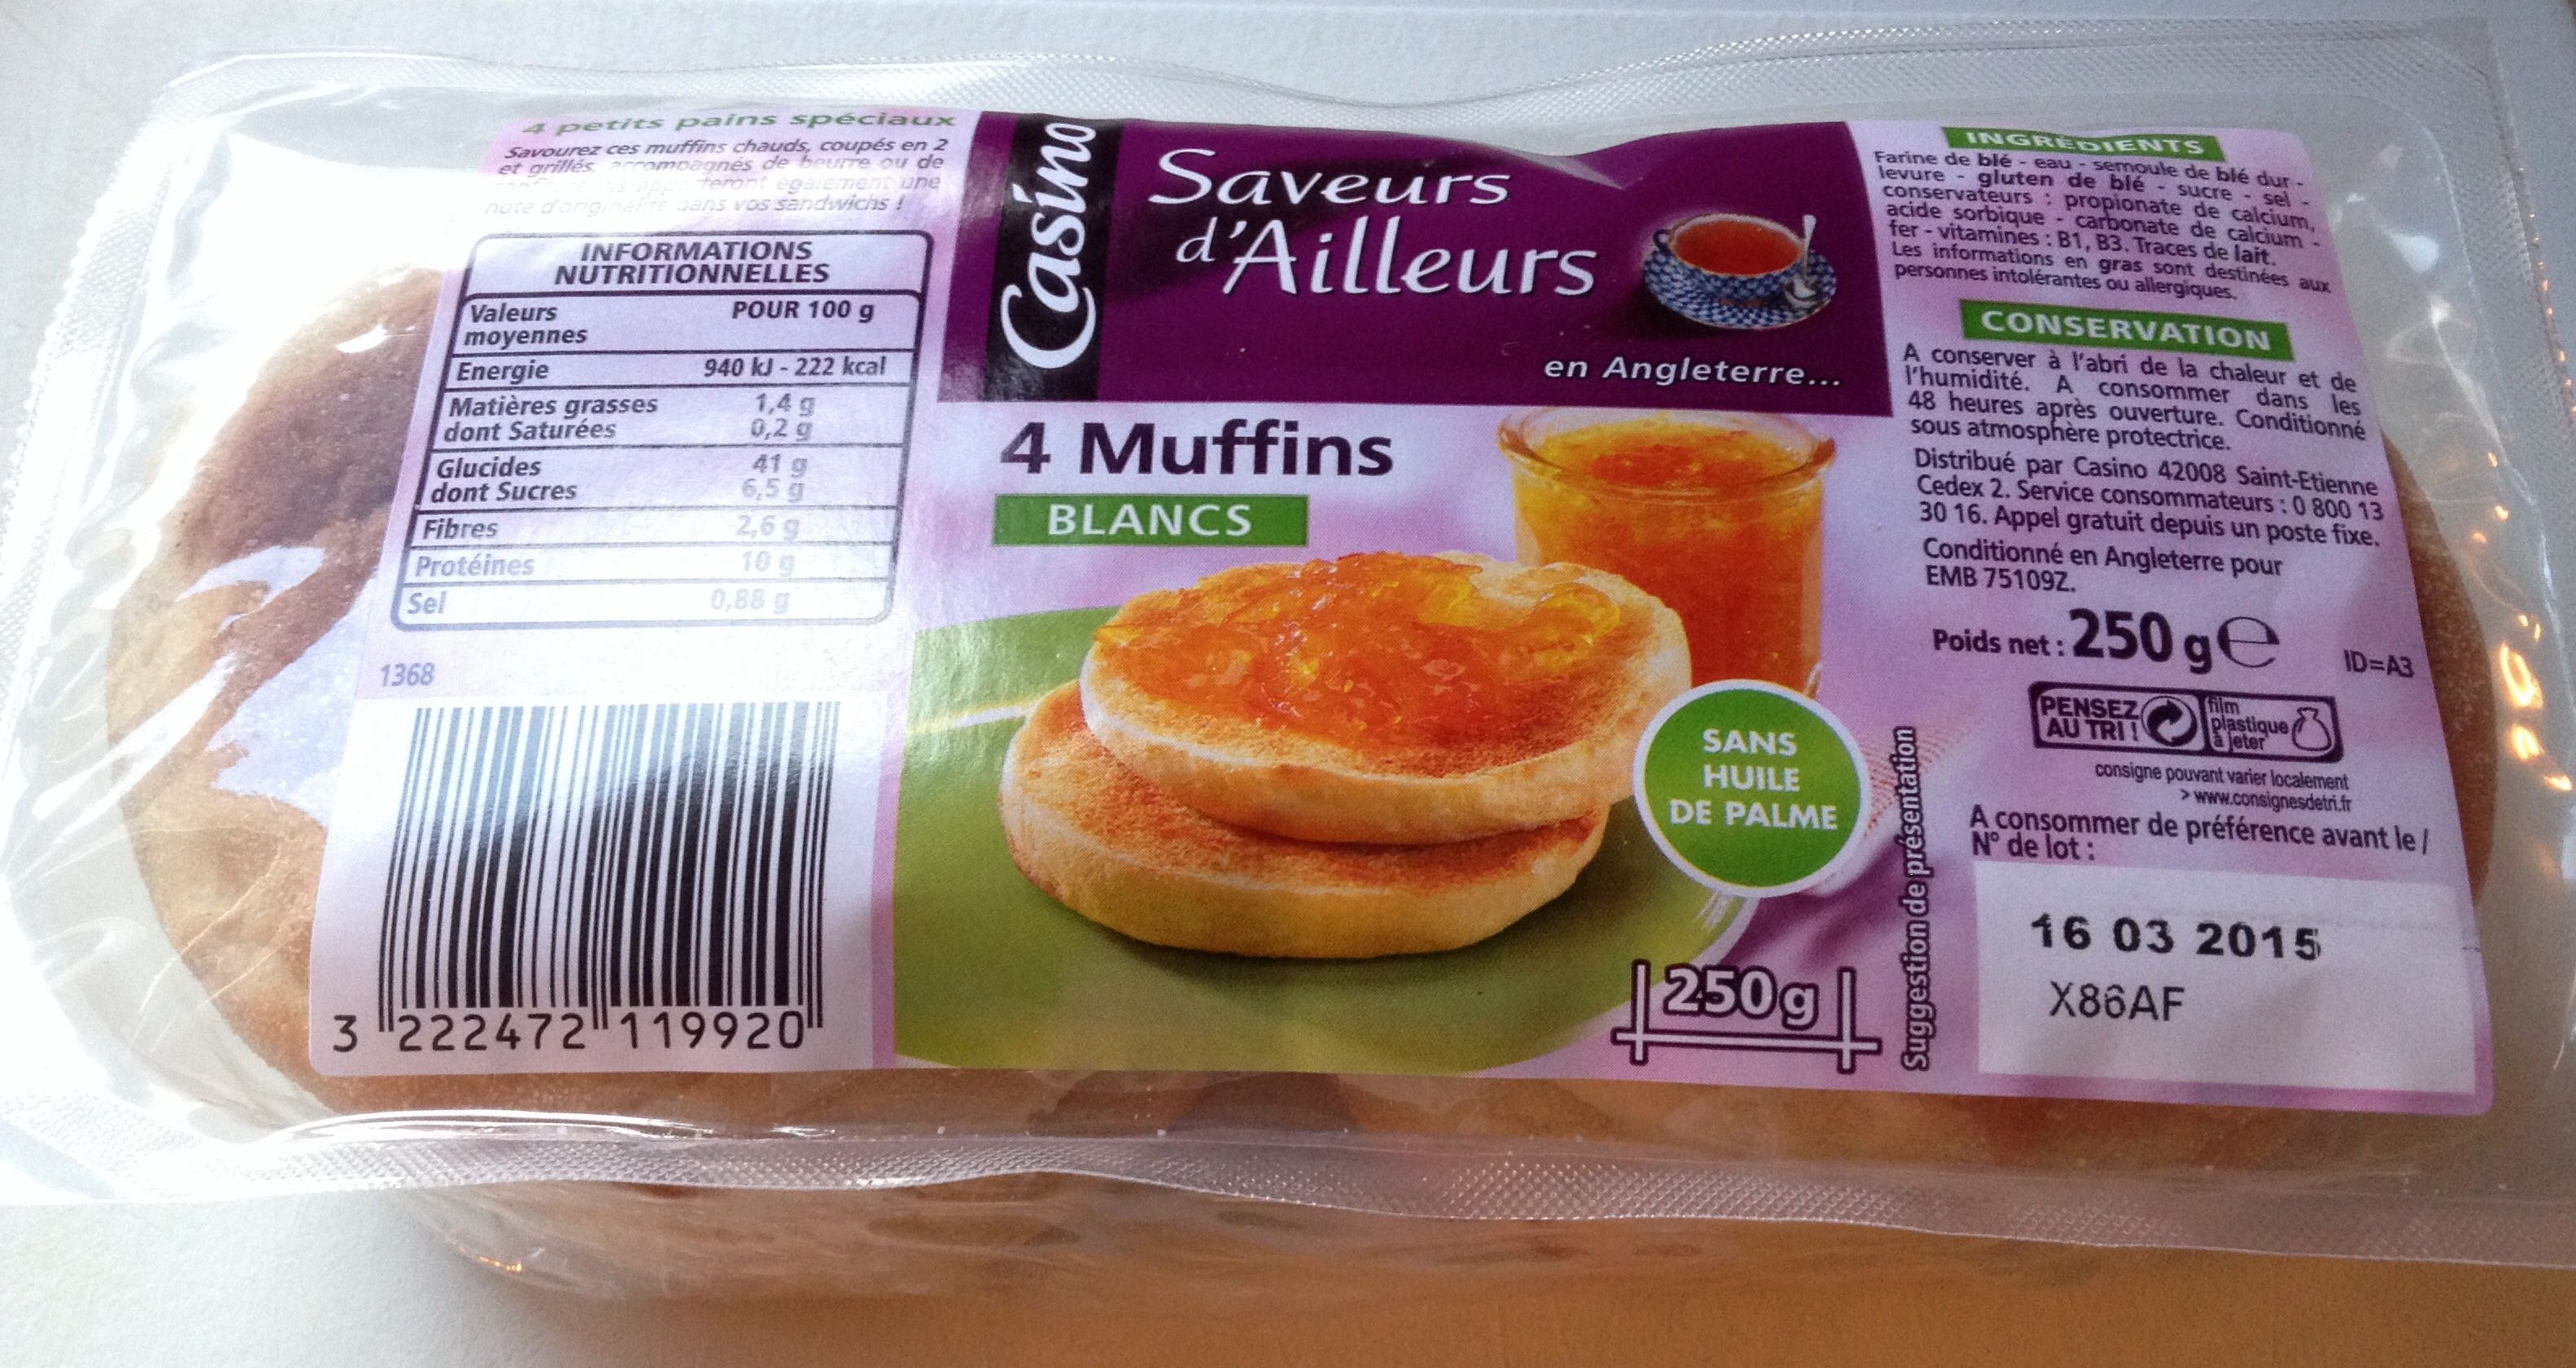 4 Muffins blancs - CASINO SAVEURS D'AILLEURS - Royaume-Uni - Produit